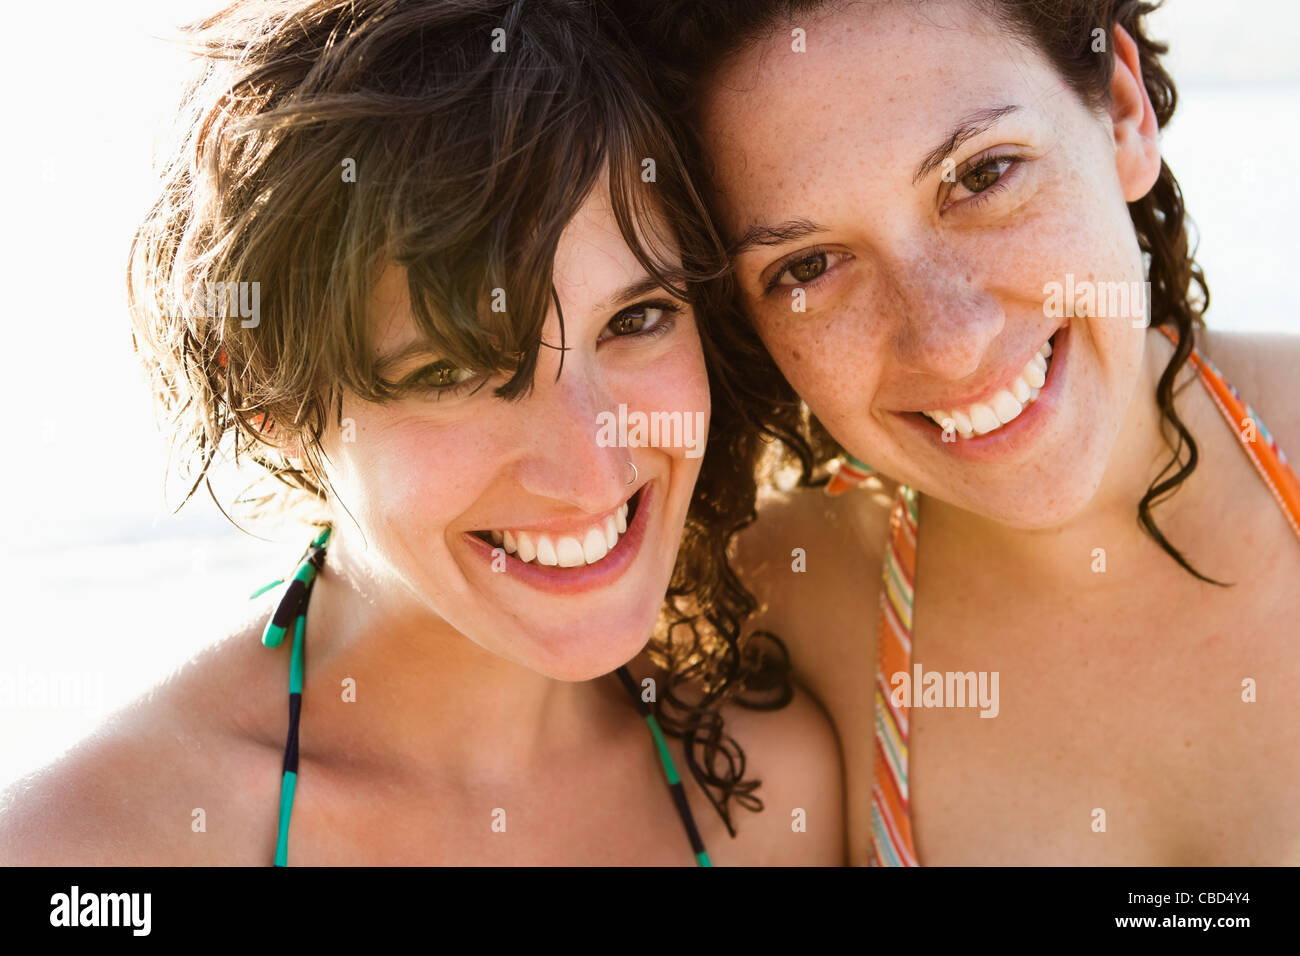 Frauen In Bikinis Lächelnd Zusammen Stockfotografie Alamy